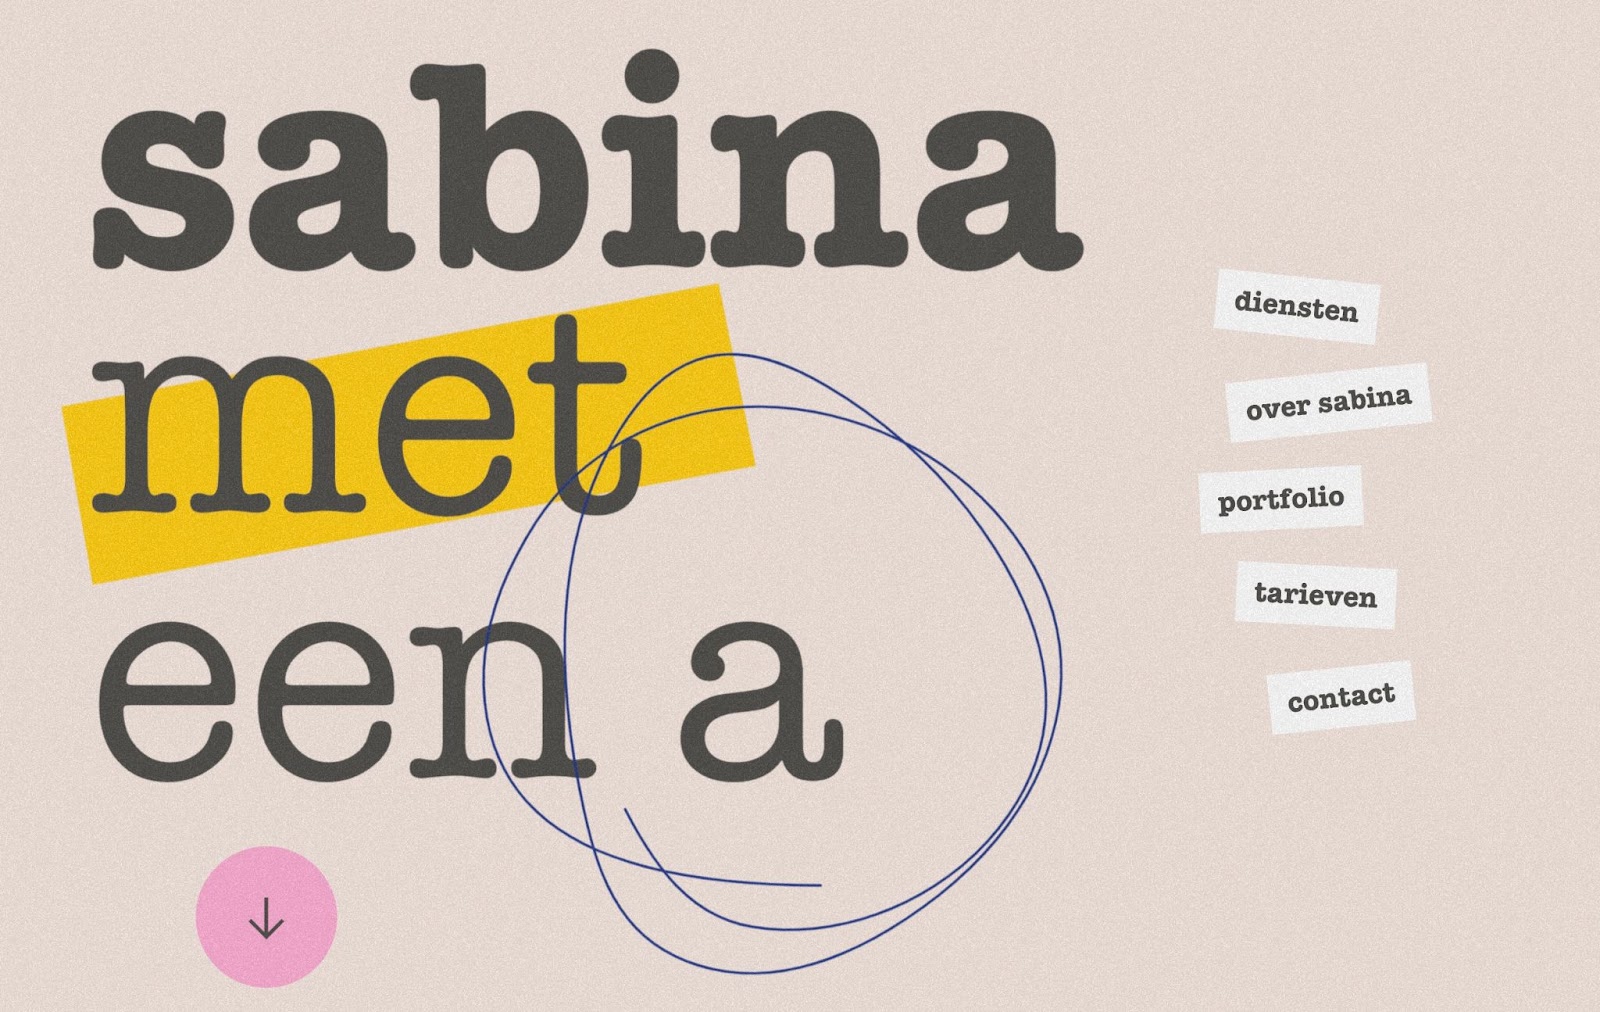 「Sabina met een a」ウェブサイトのヘッダー。黄褐色の粗い背景に大きな黒いタイトル テキスト、黄色で強調表示された「met」という単語、「a」の周りの走り書きの円、および下向きの矢印が付いたピンクの円